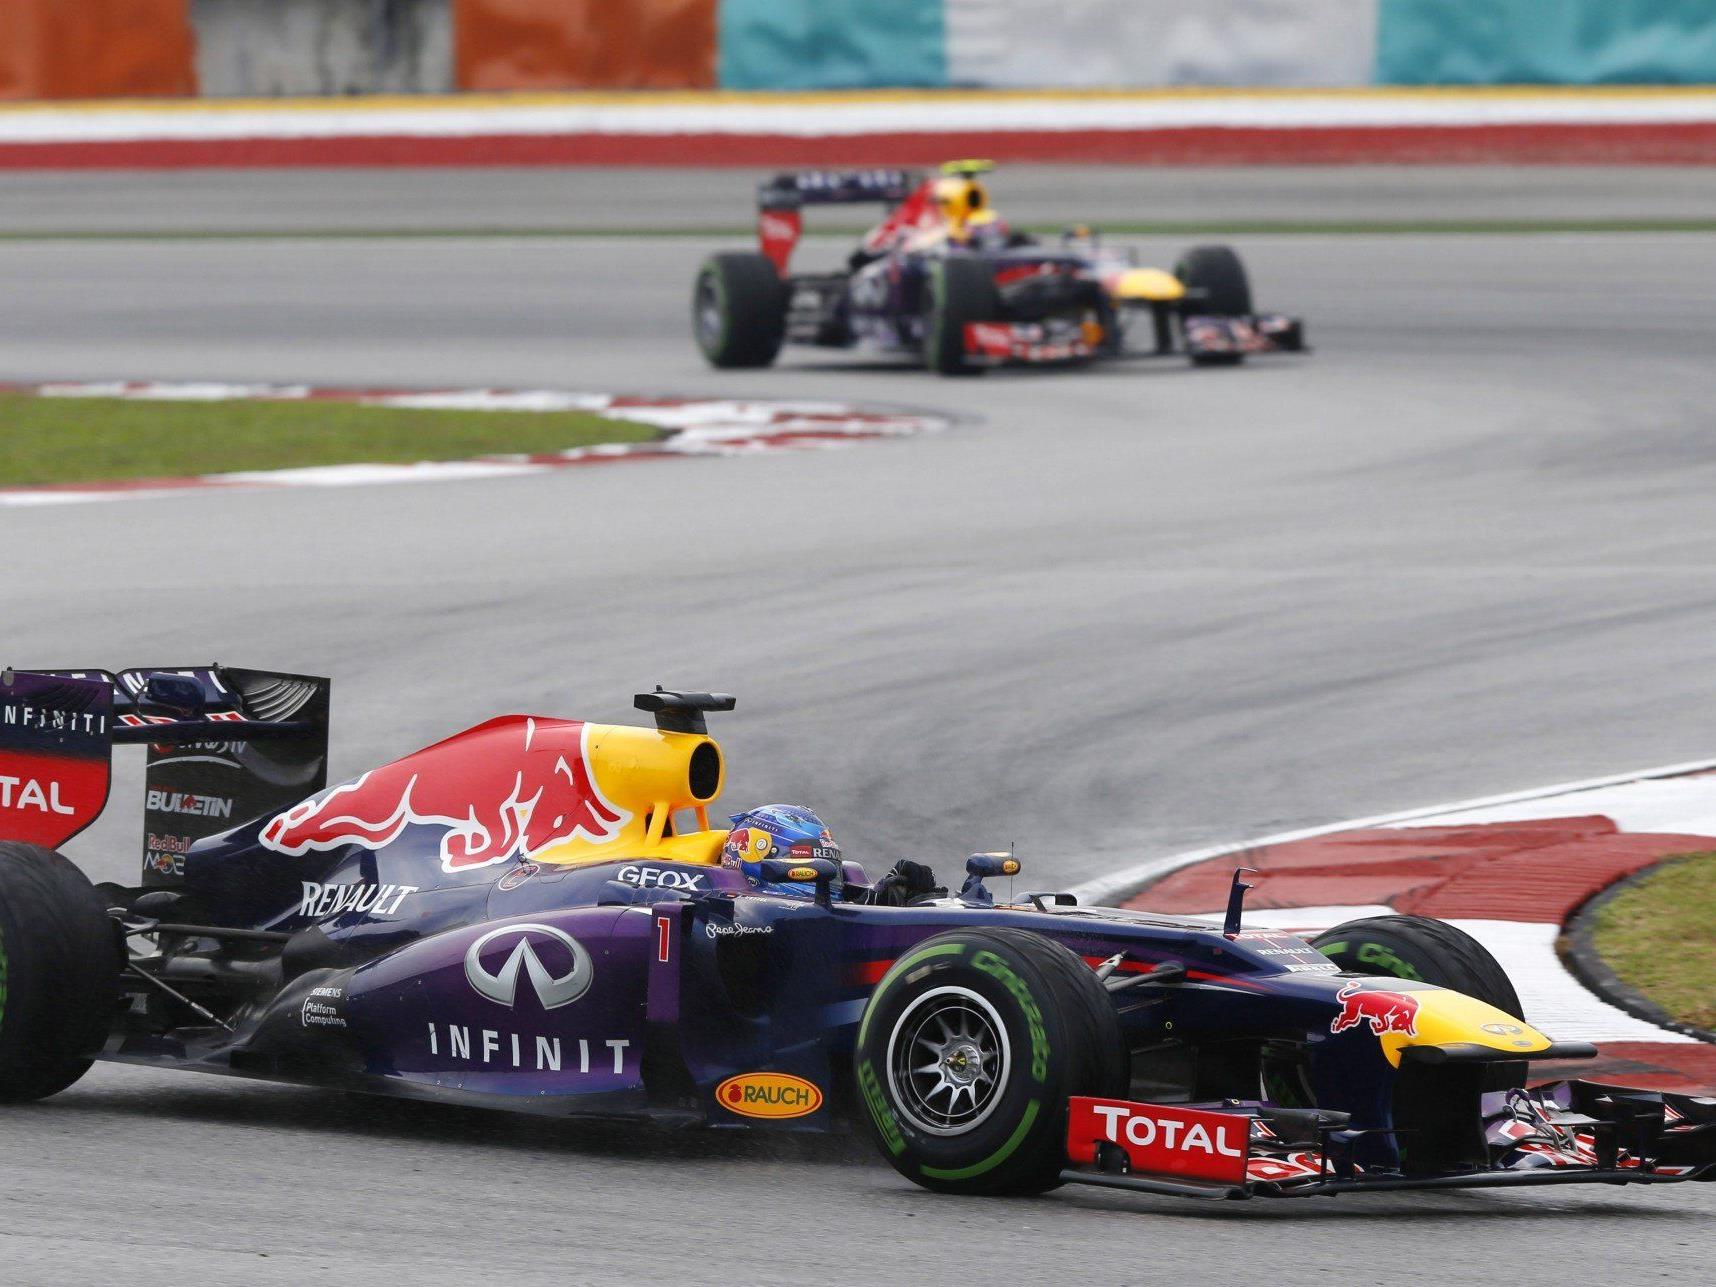 Nach einem spannenden Rennen kommt Vettel als erster über die Ziellinie.